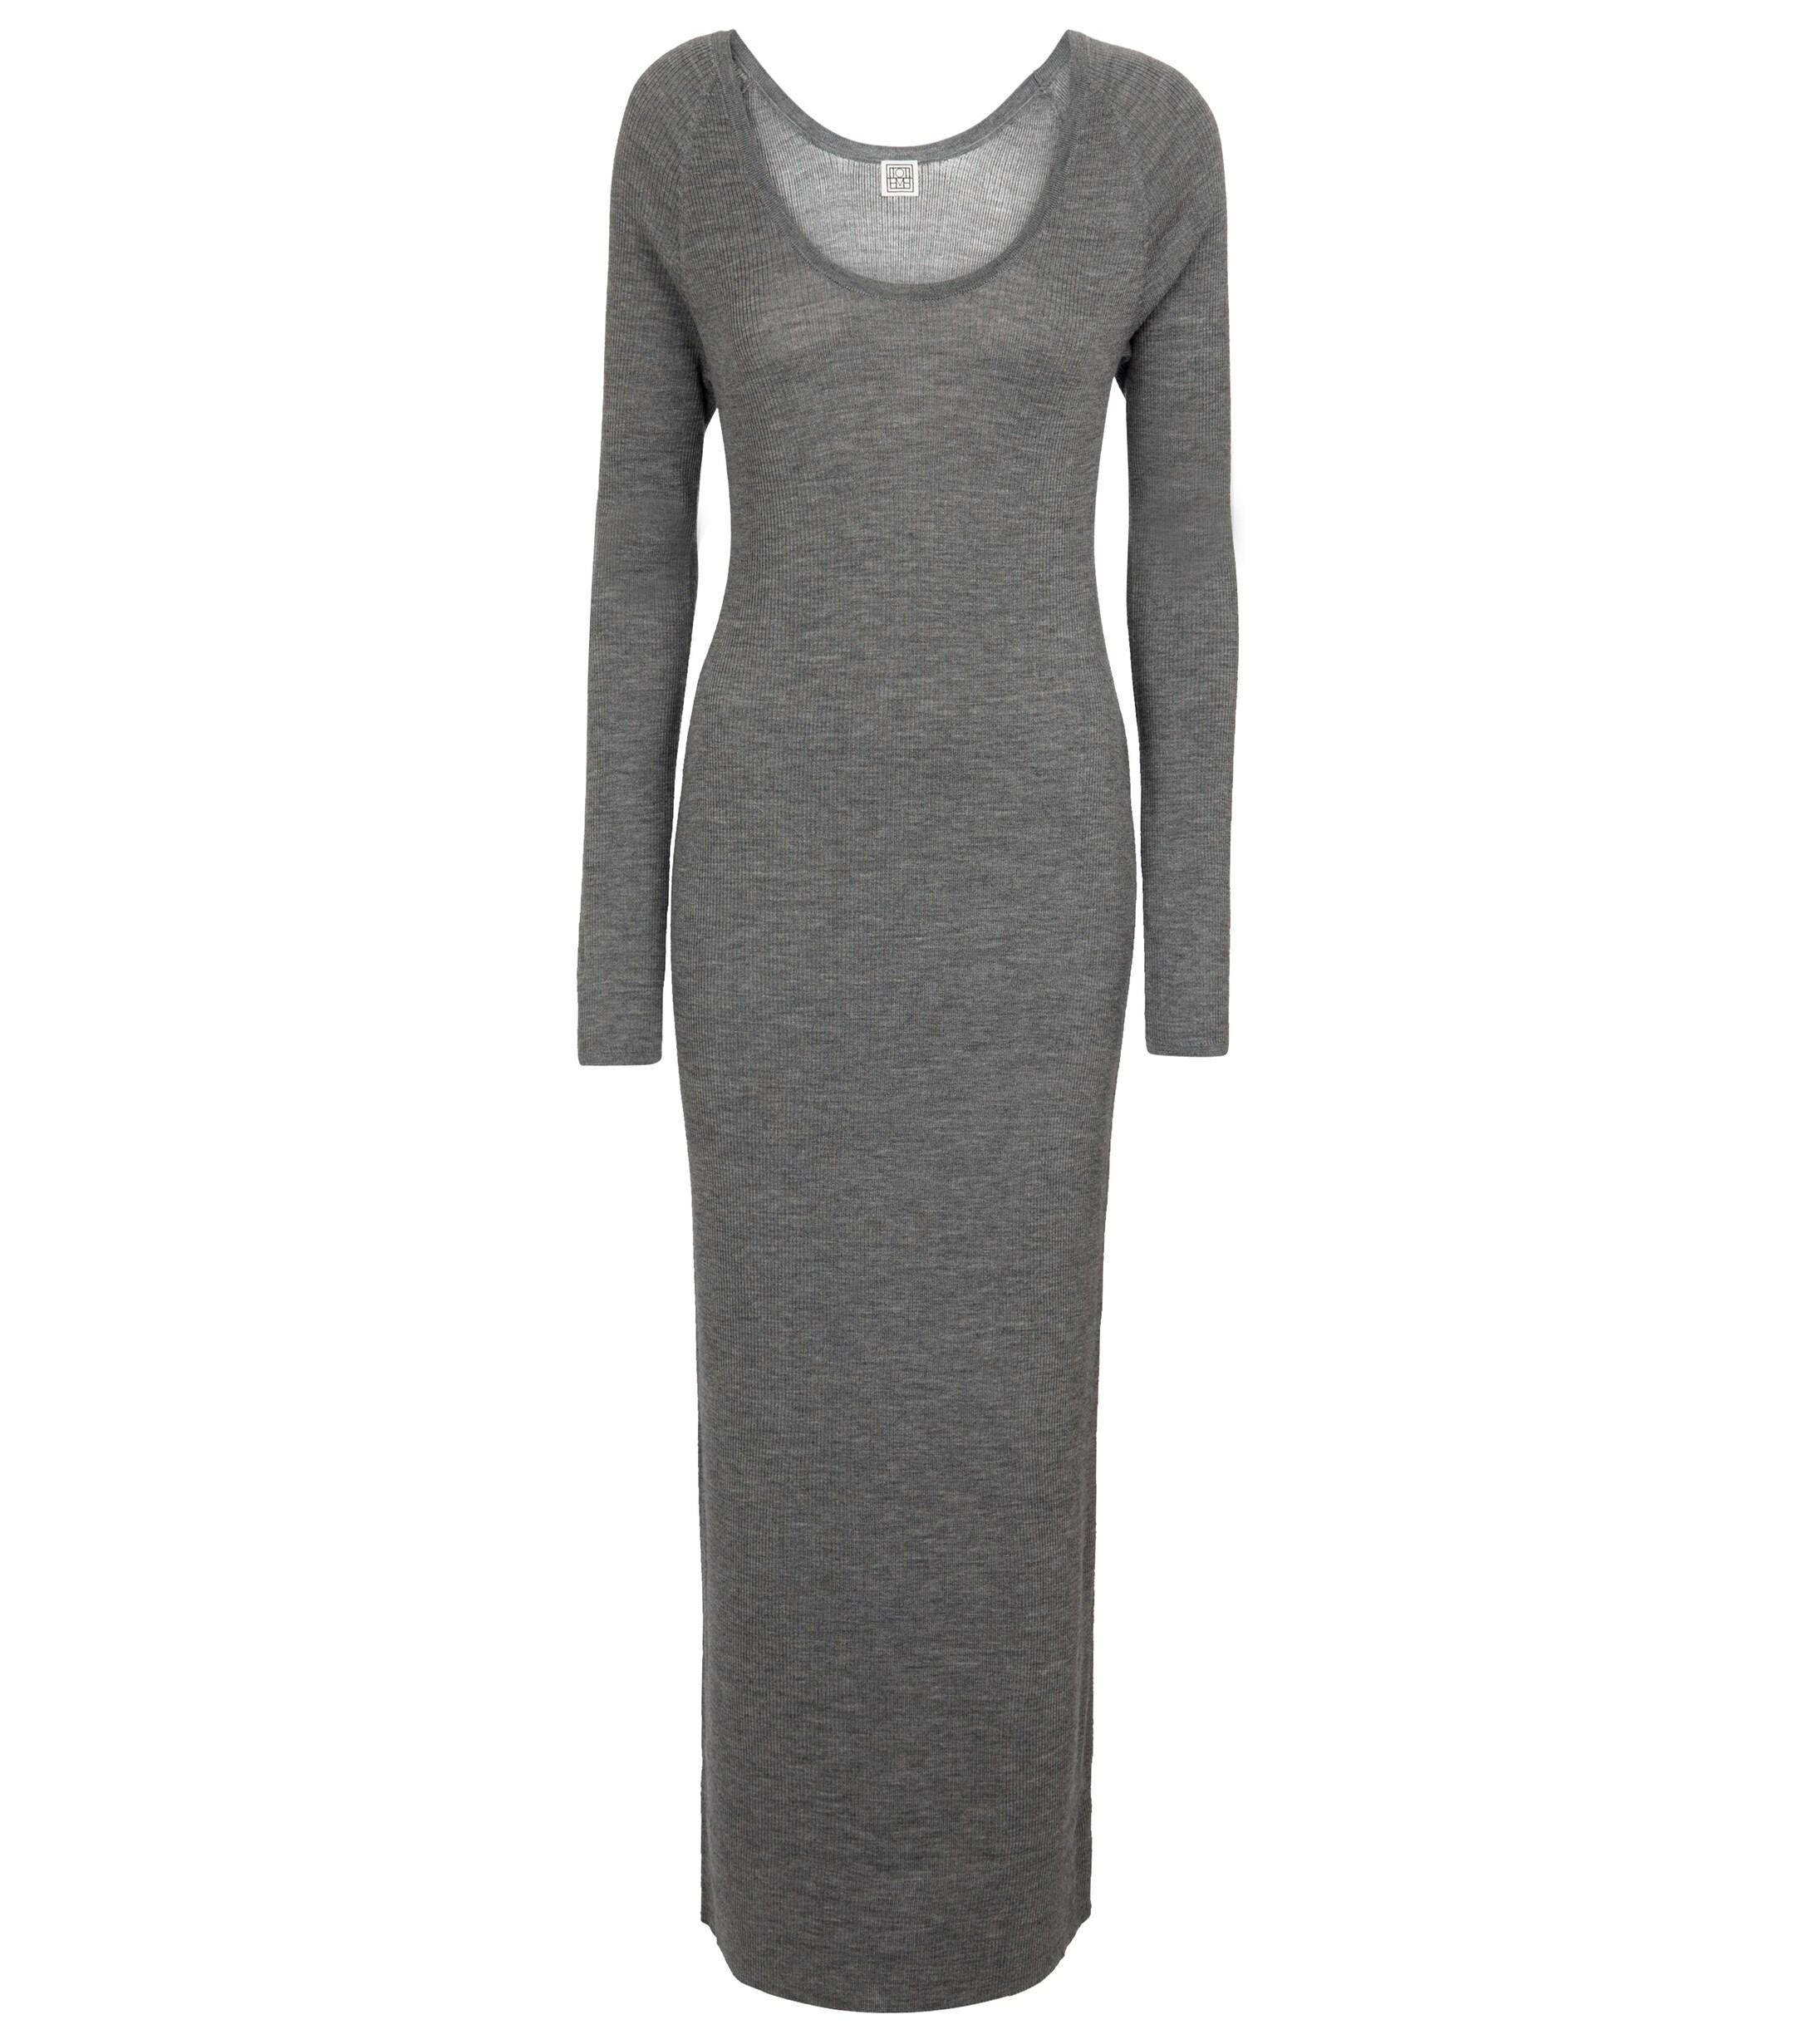 Totême Ribbed-knit Wool Dress in Grey (Grey) | Lyst Canada